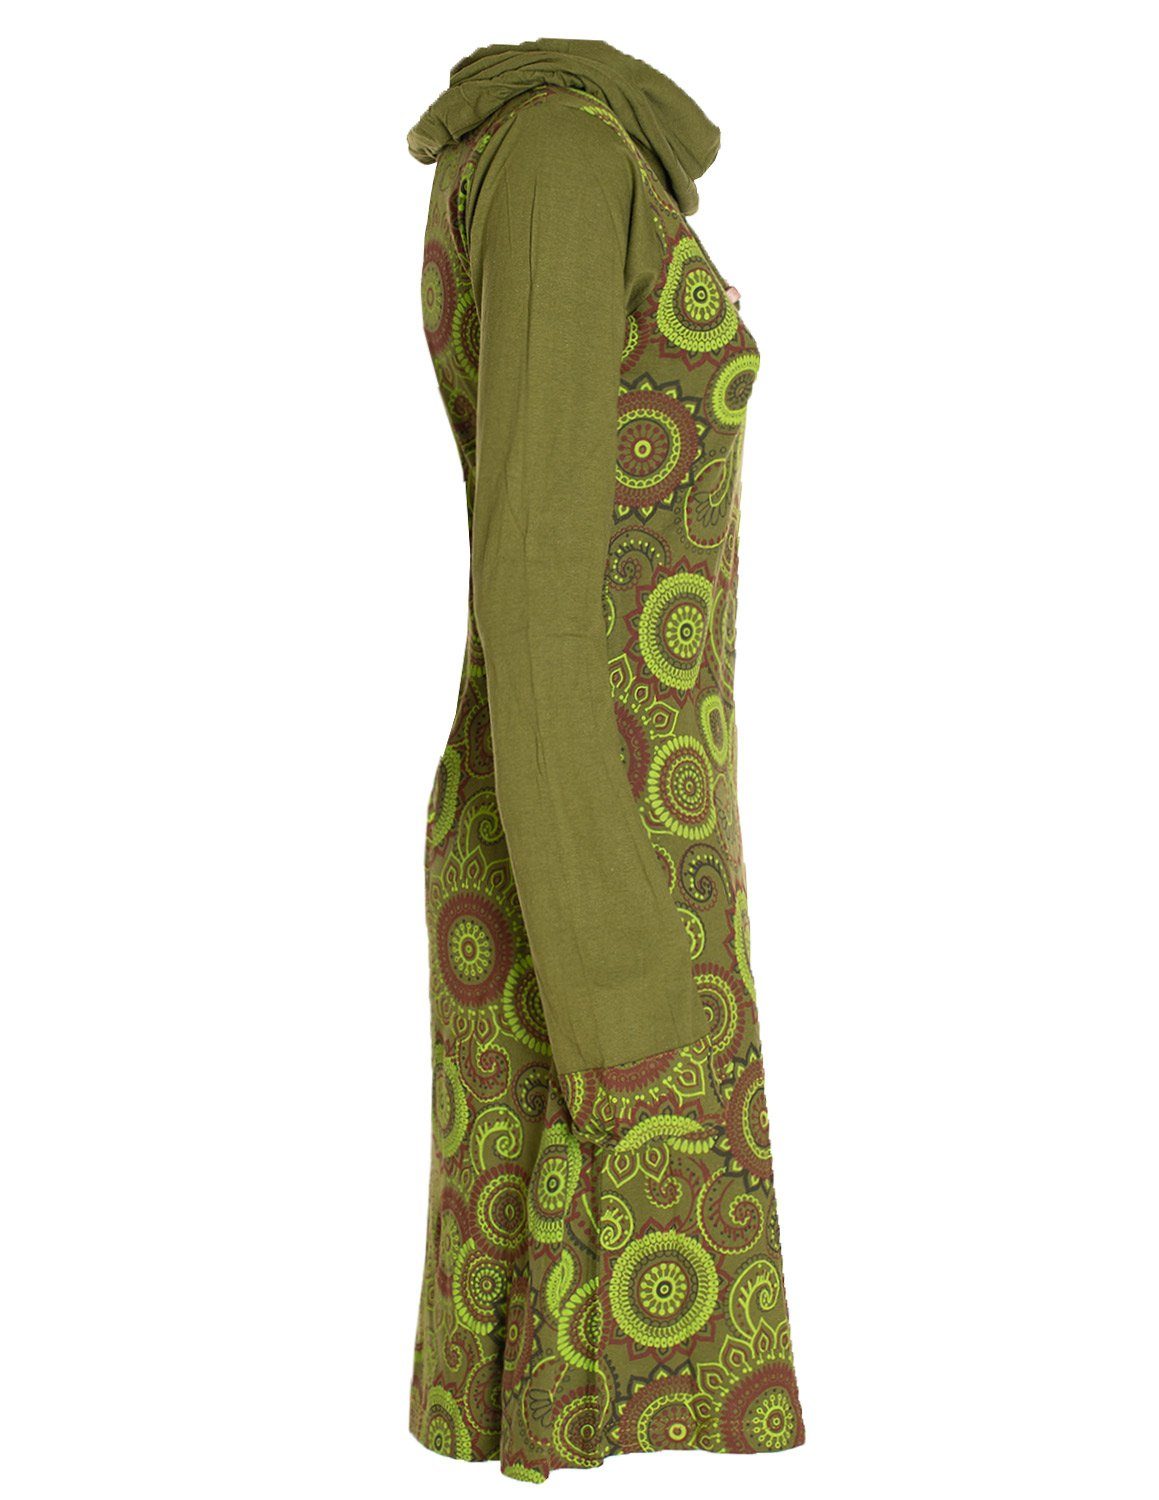 Vishes Jerseykleid Kleid Langarm Schal-Kleid Goa, Hippie, Style olive Ethno Baumwollkleid Winterkleider